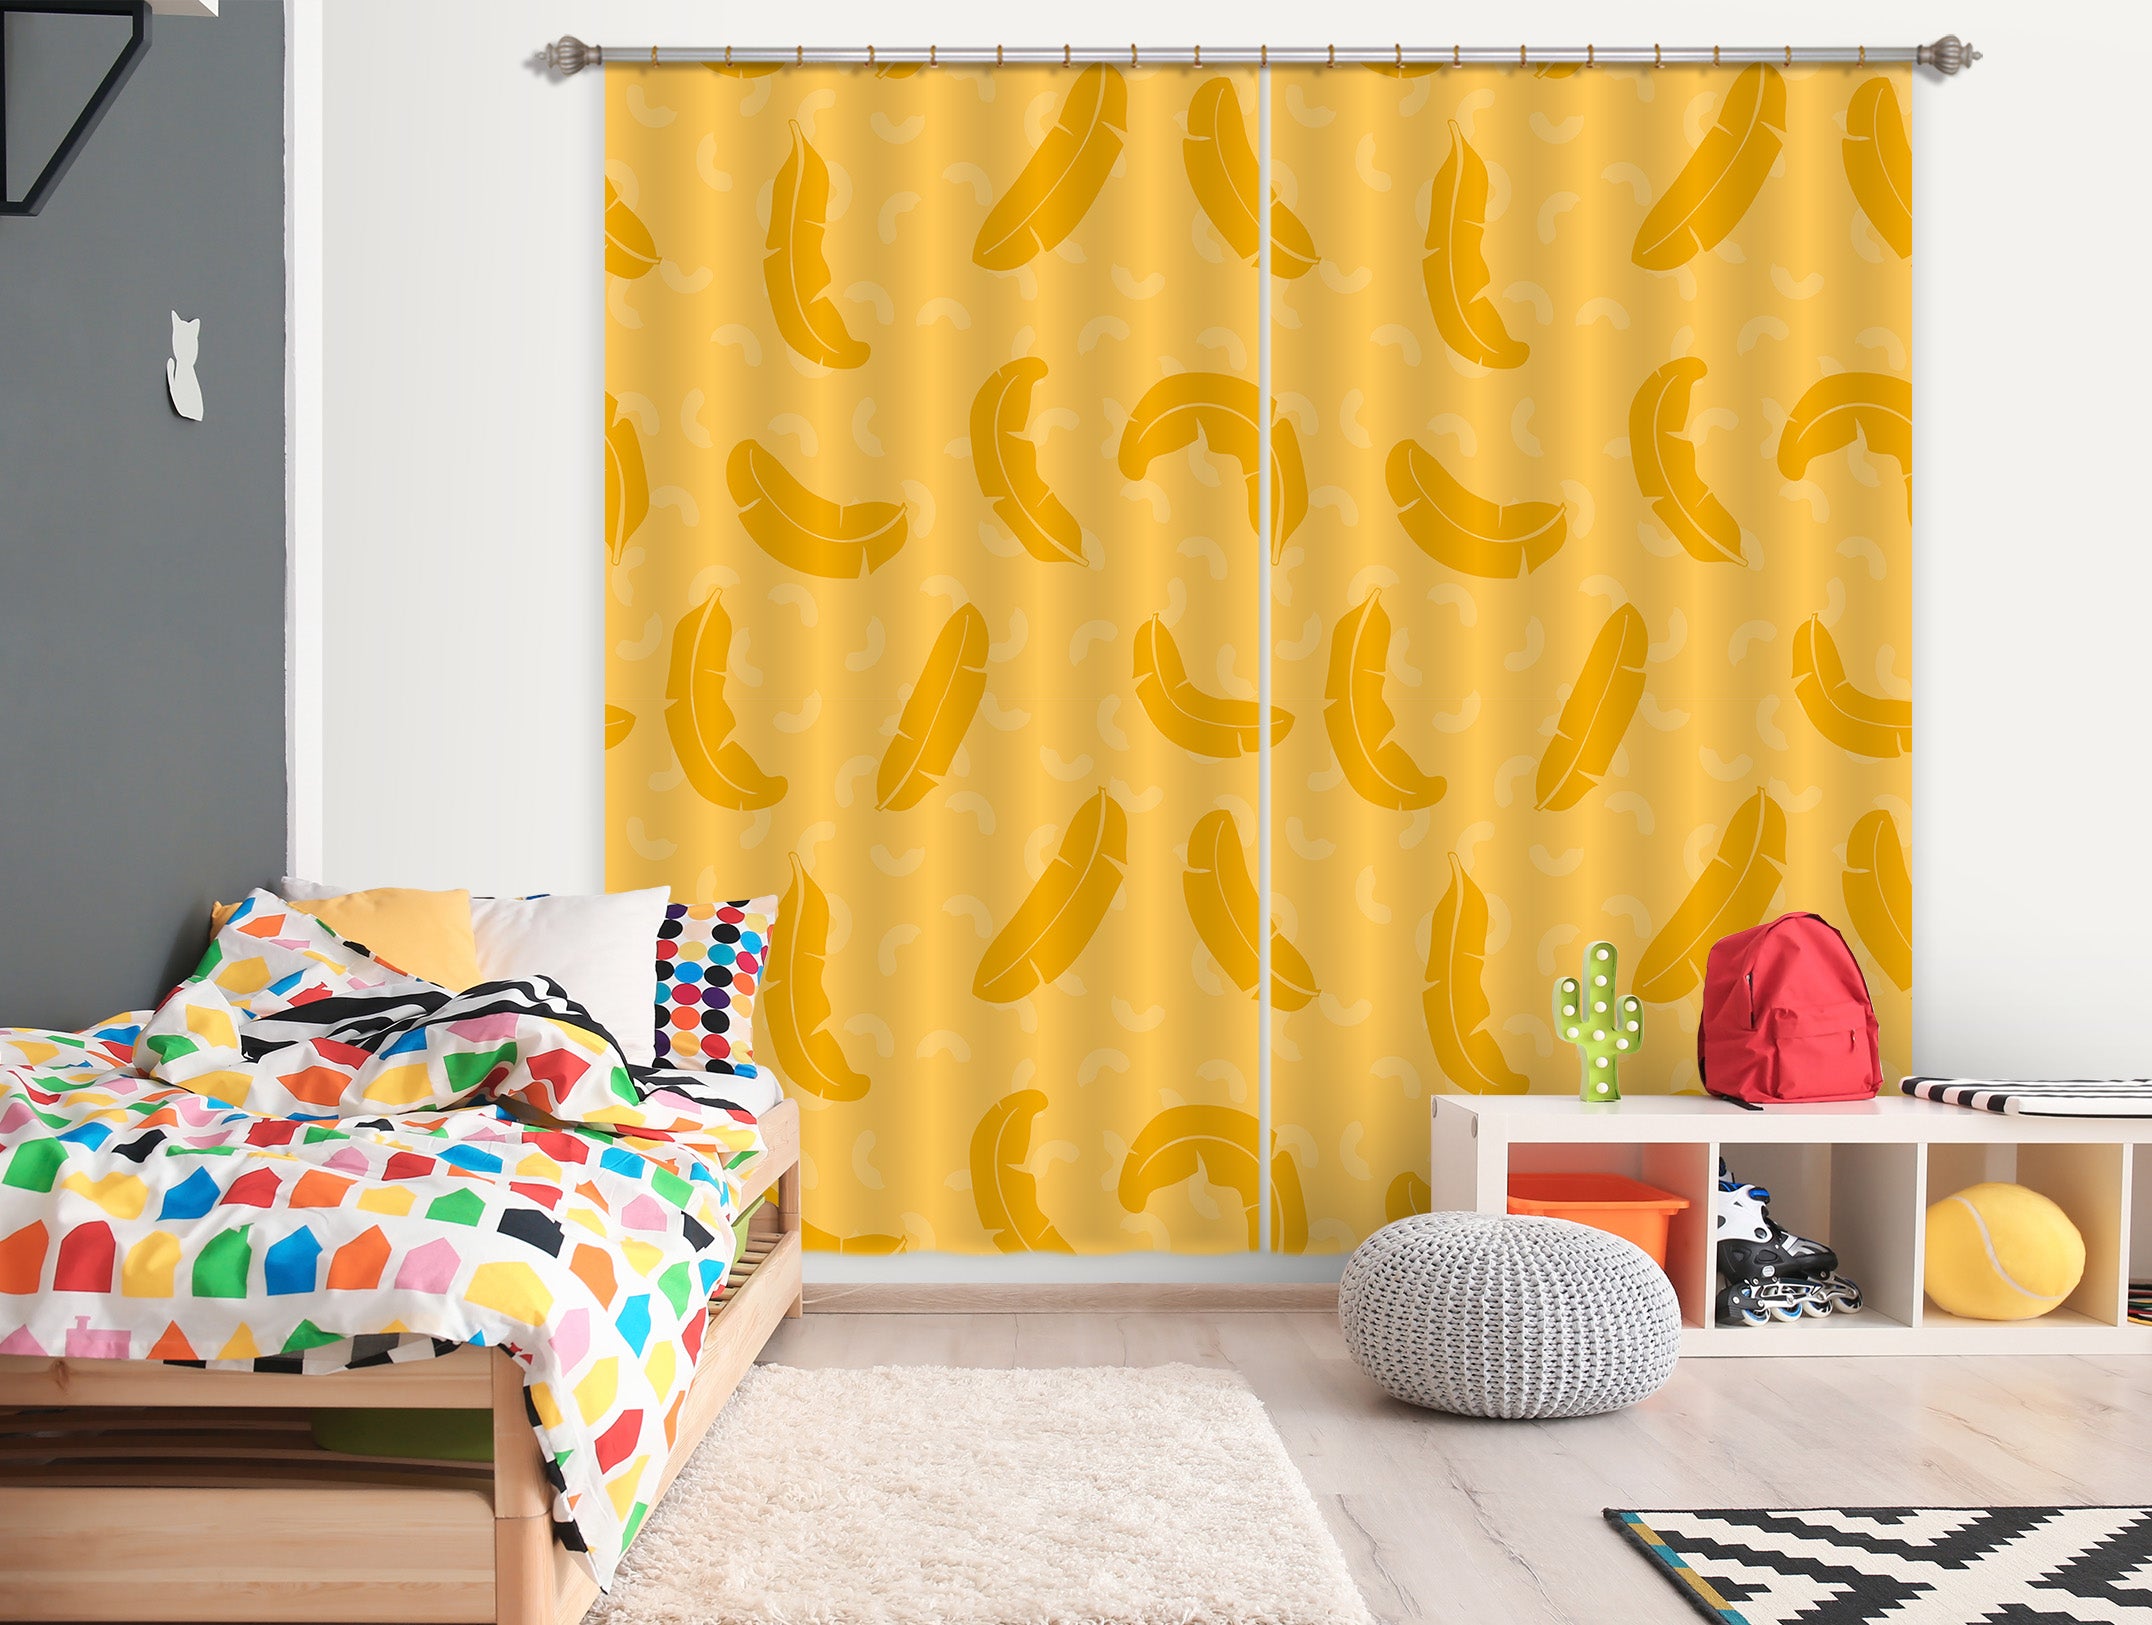 3D Yellow Feather 11165 Kashmira Jayaprakash Curtain Curtains Drapes